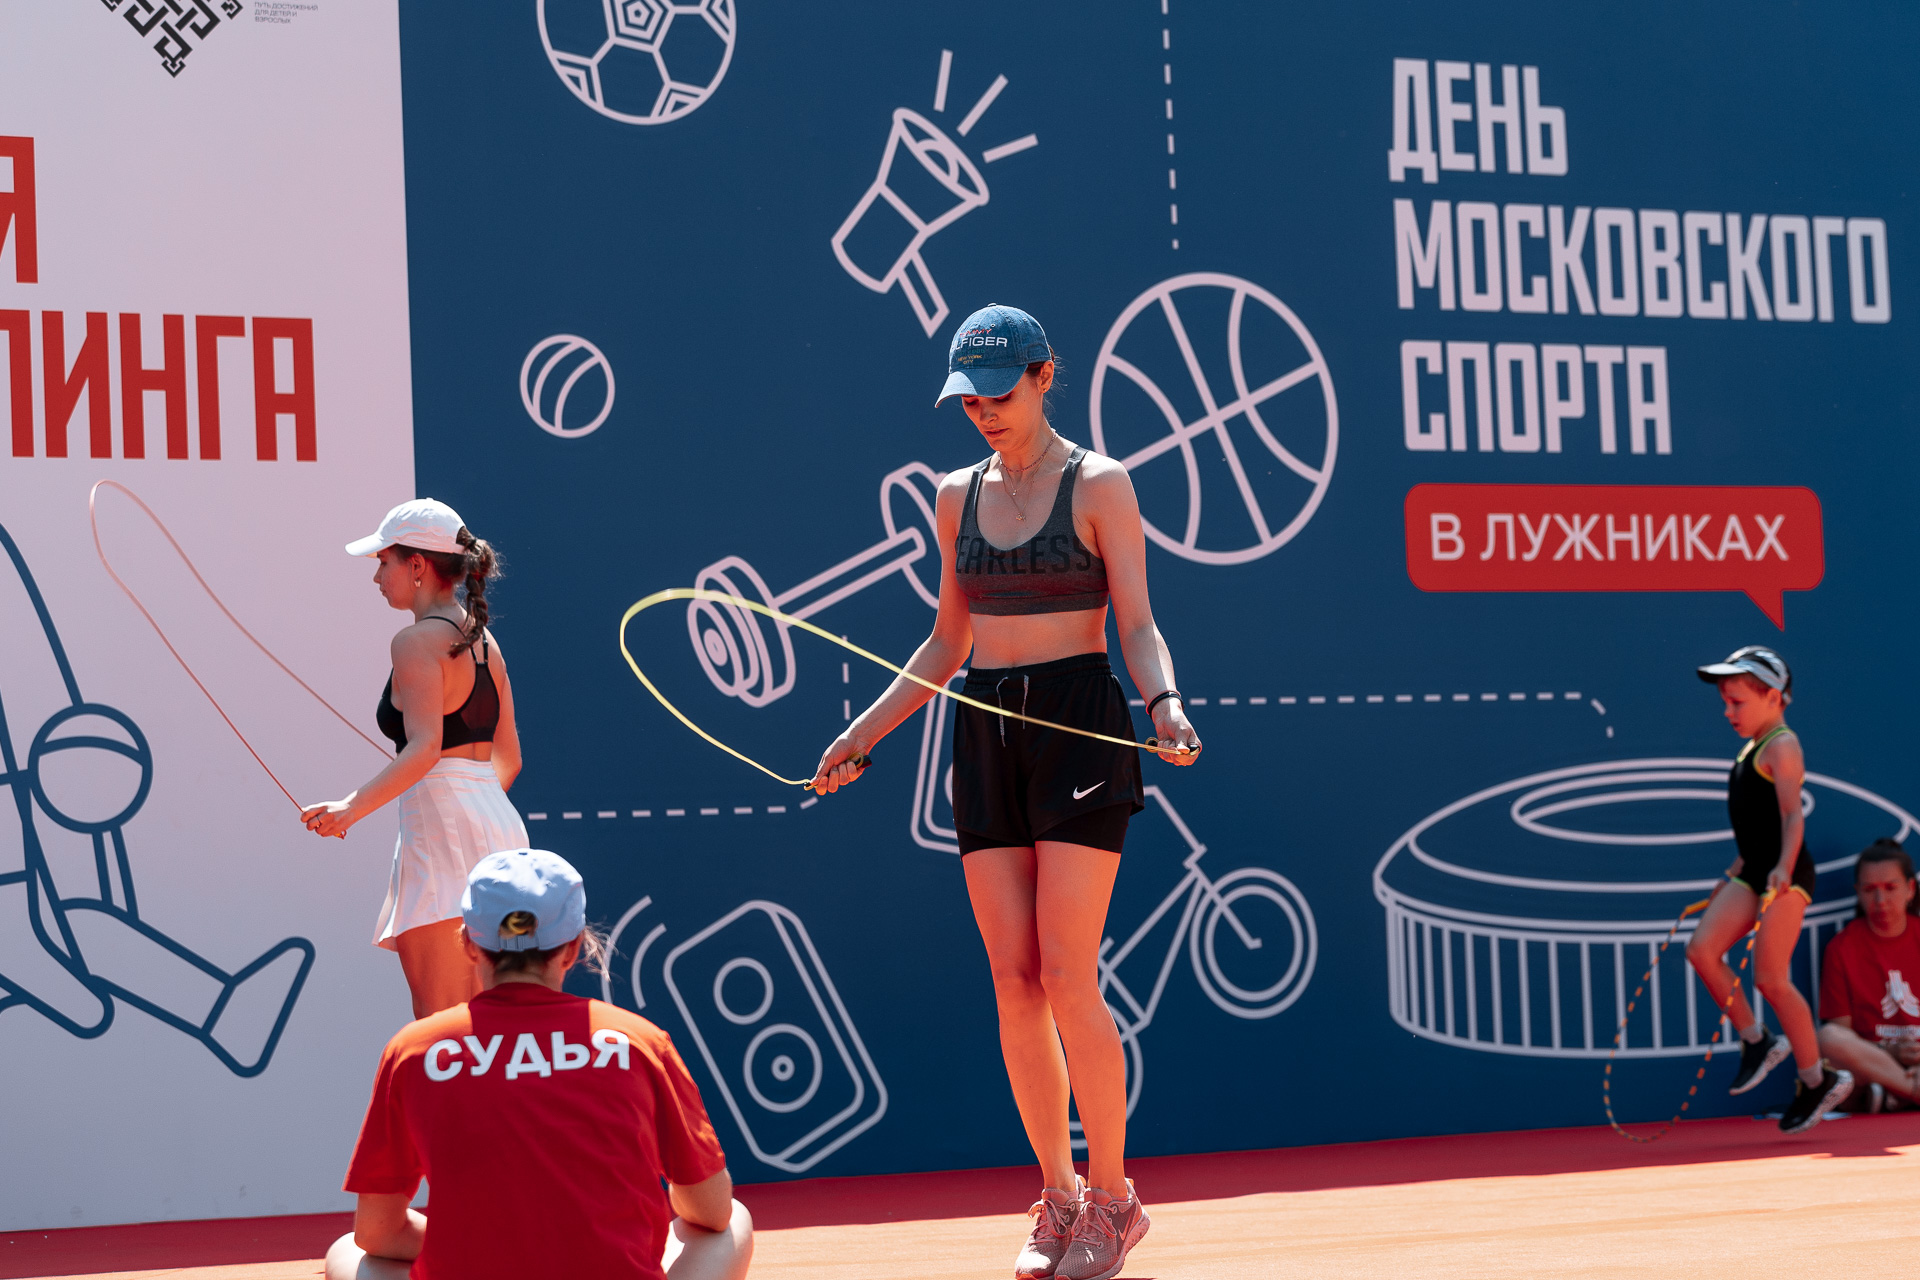 Празднование 100-летия Московского спорта пройдет 1 июля в олимпийском комплексе «Лужники»